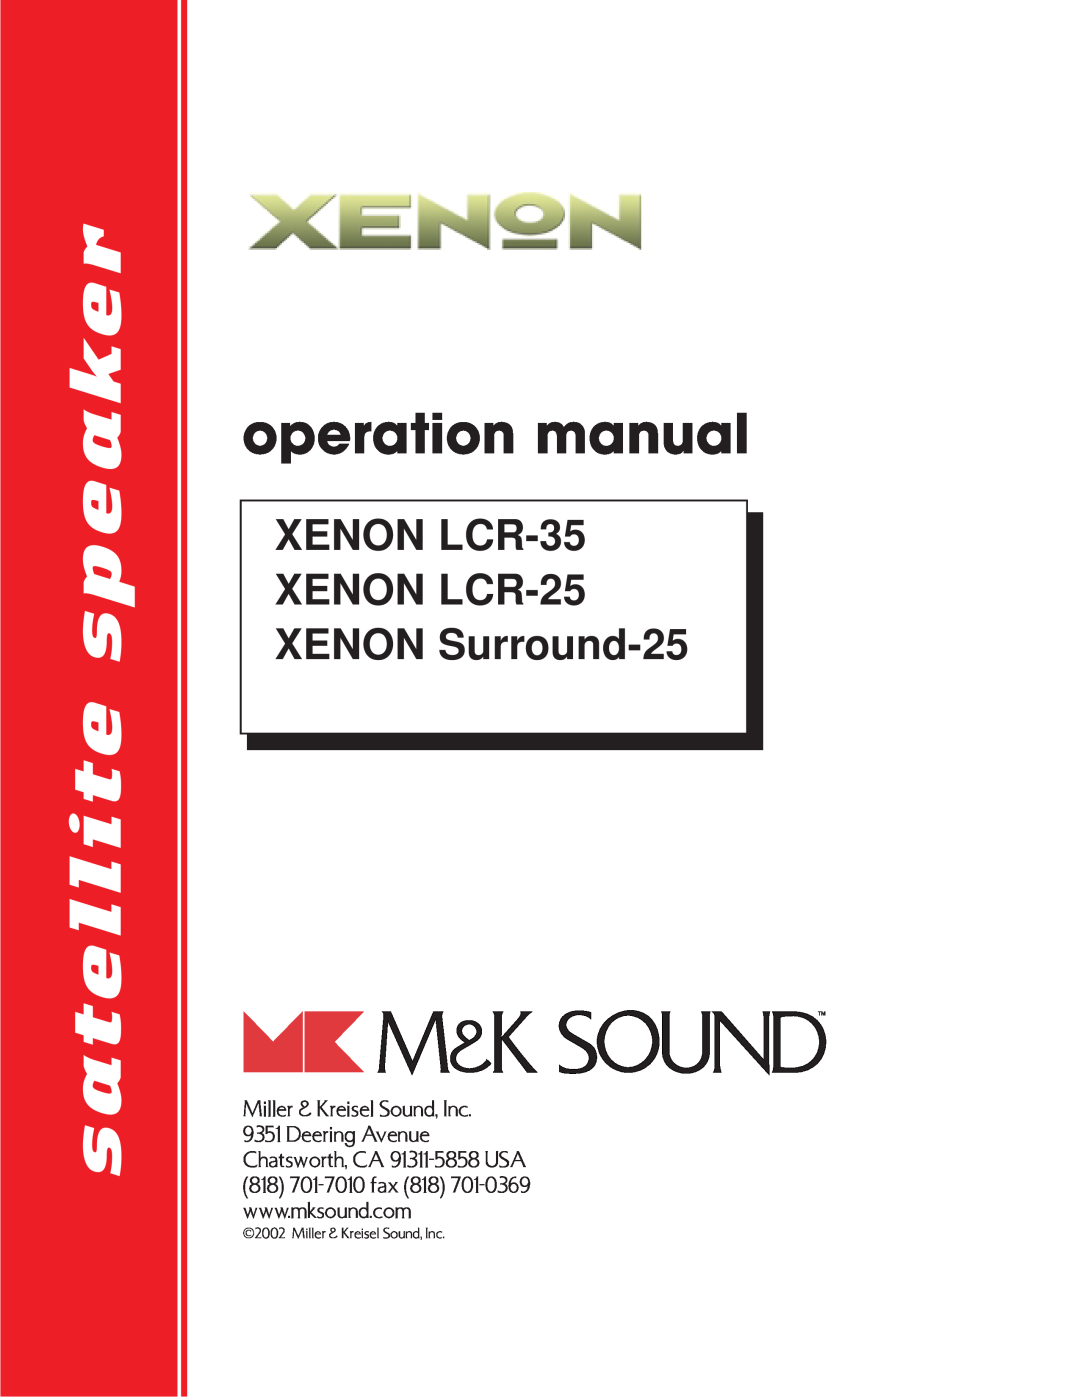 MK Sound LCD-35 operation manual satellite speaker, XENON LCR-35XENON LCR-25XENON Surround-25, Miller & Kreisel Sound, Inc 